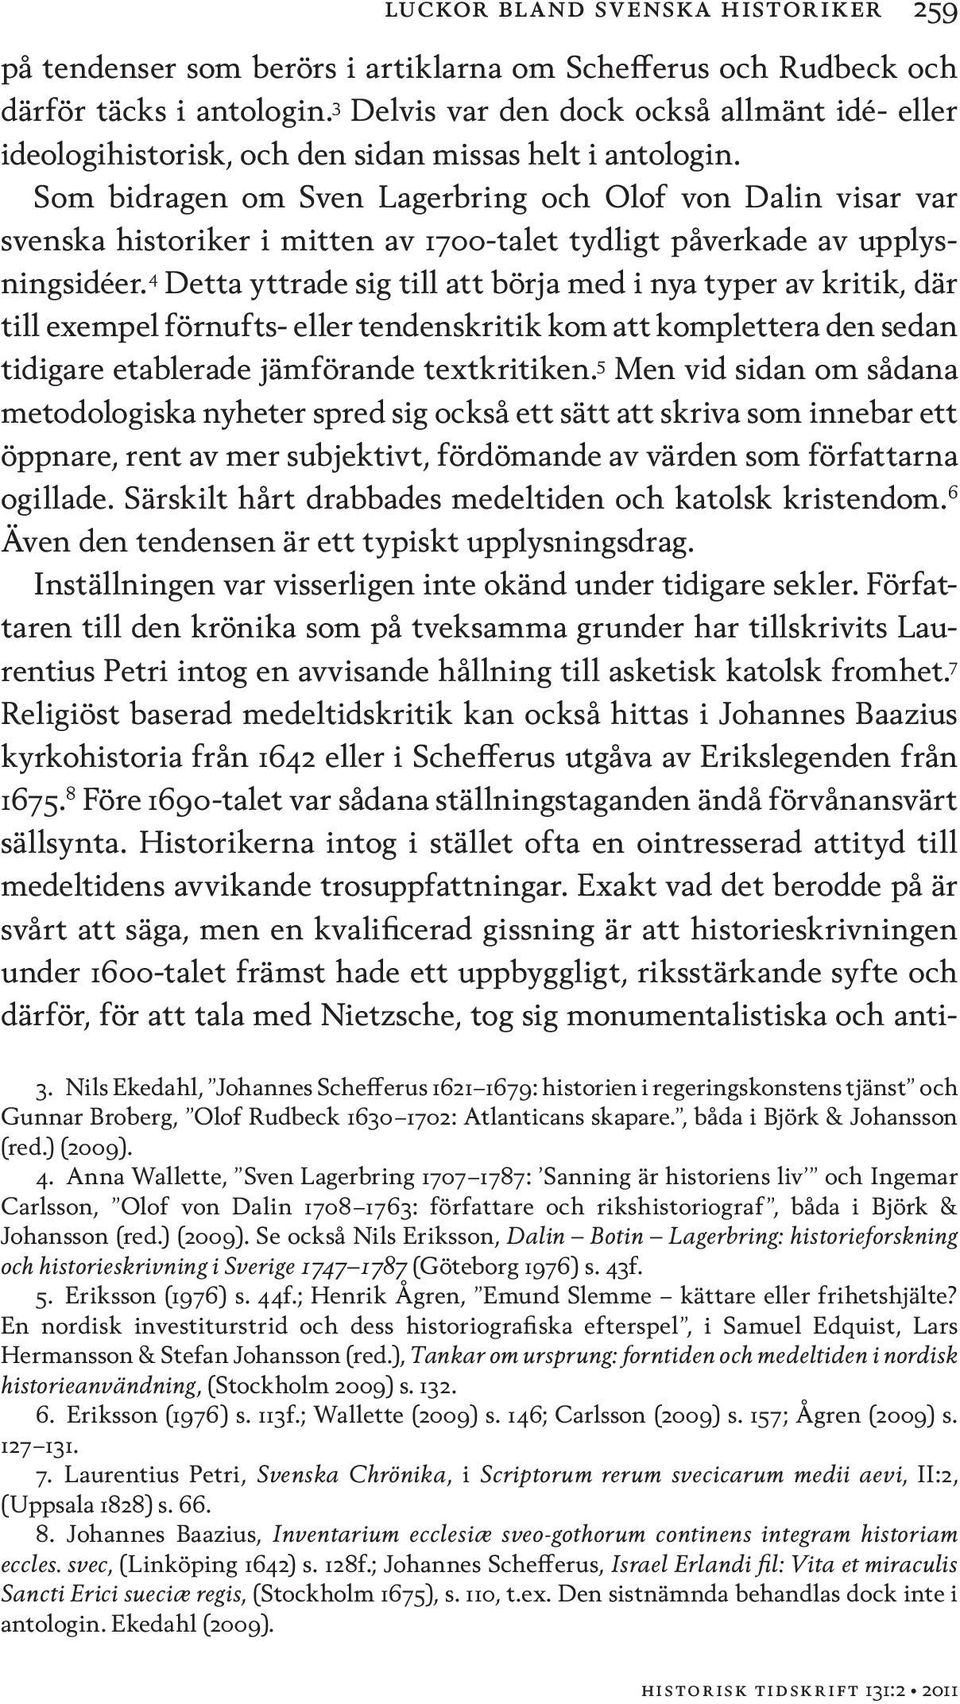 Som bidragen om Sven Lagerbring och Olof von Dalin visar var svenska historiker i mitten av 1700-talet tydligt påverkade av upplysningsidéer.